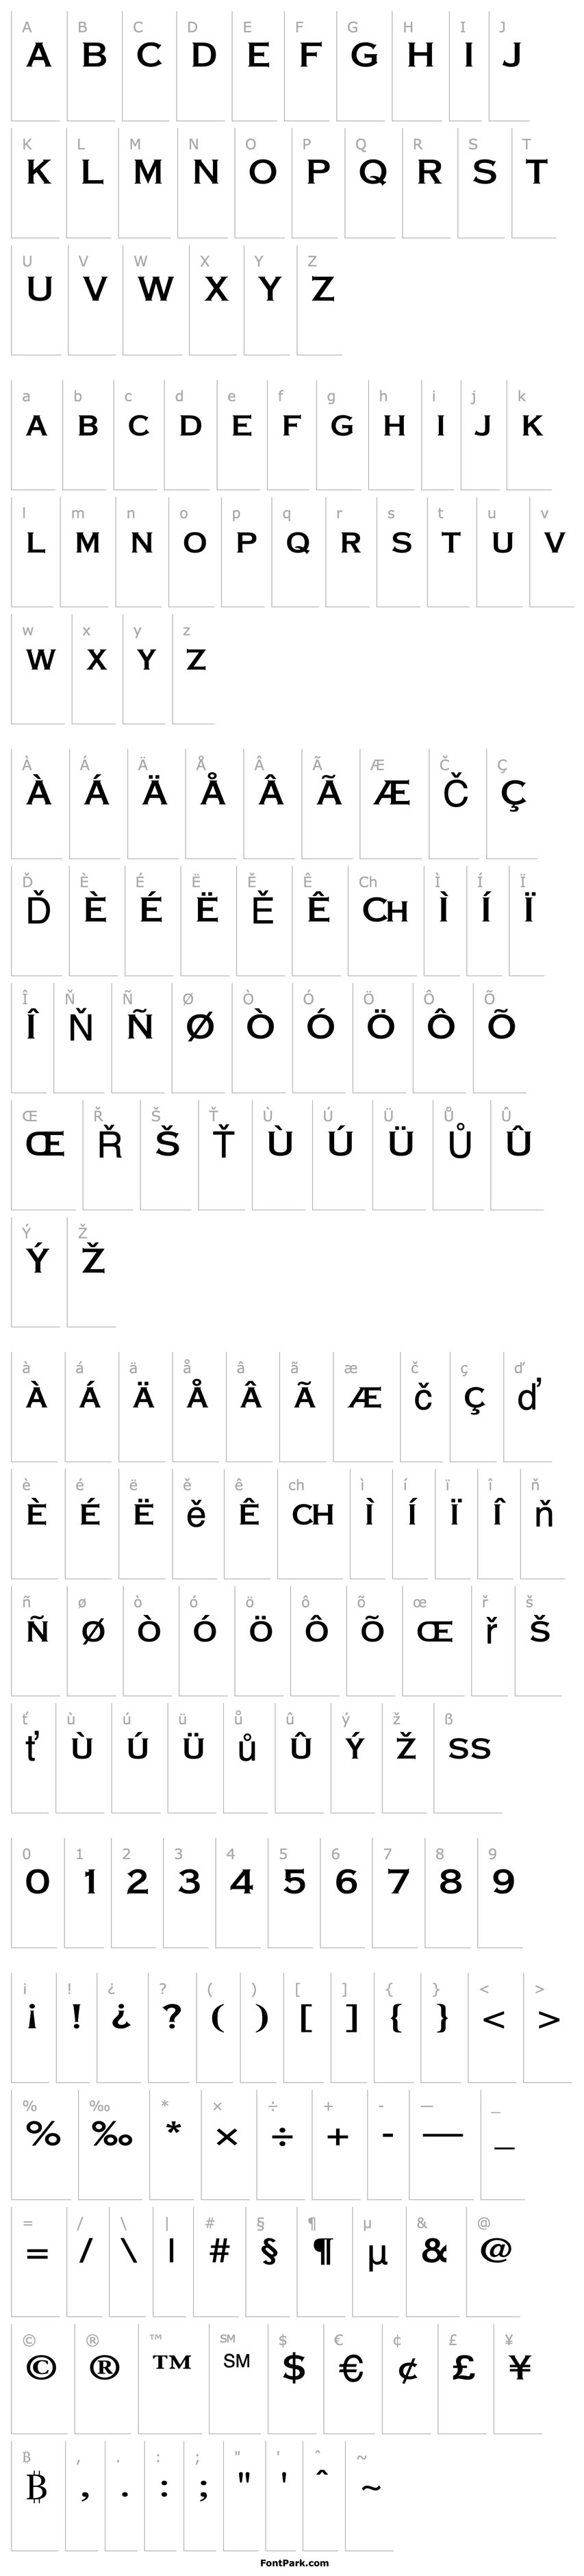 Overview Font-A-Holic Regular ttnorm